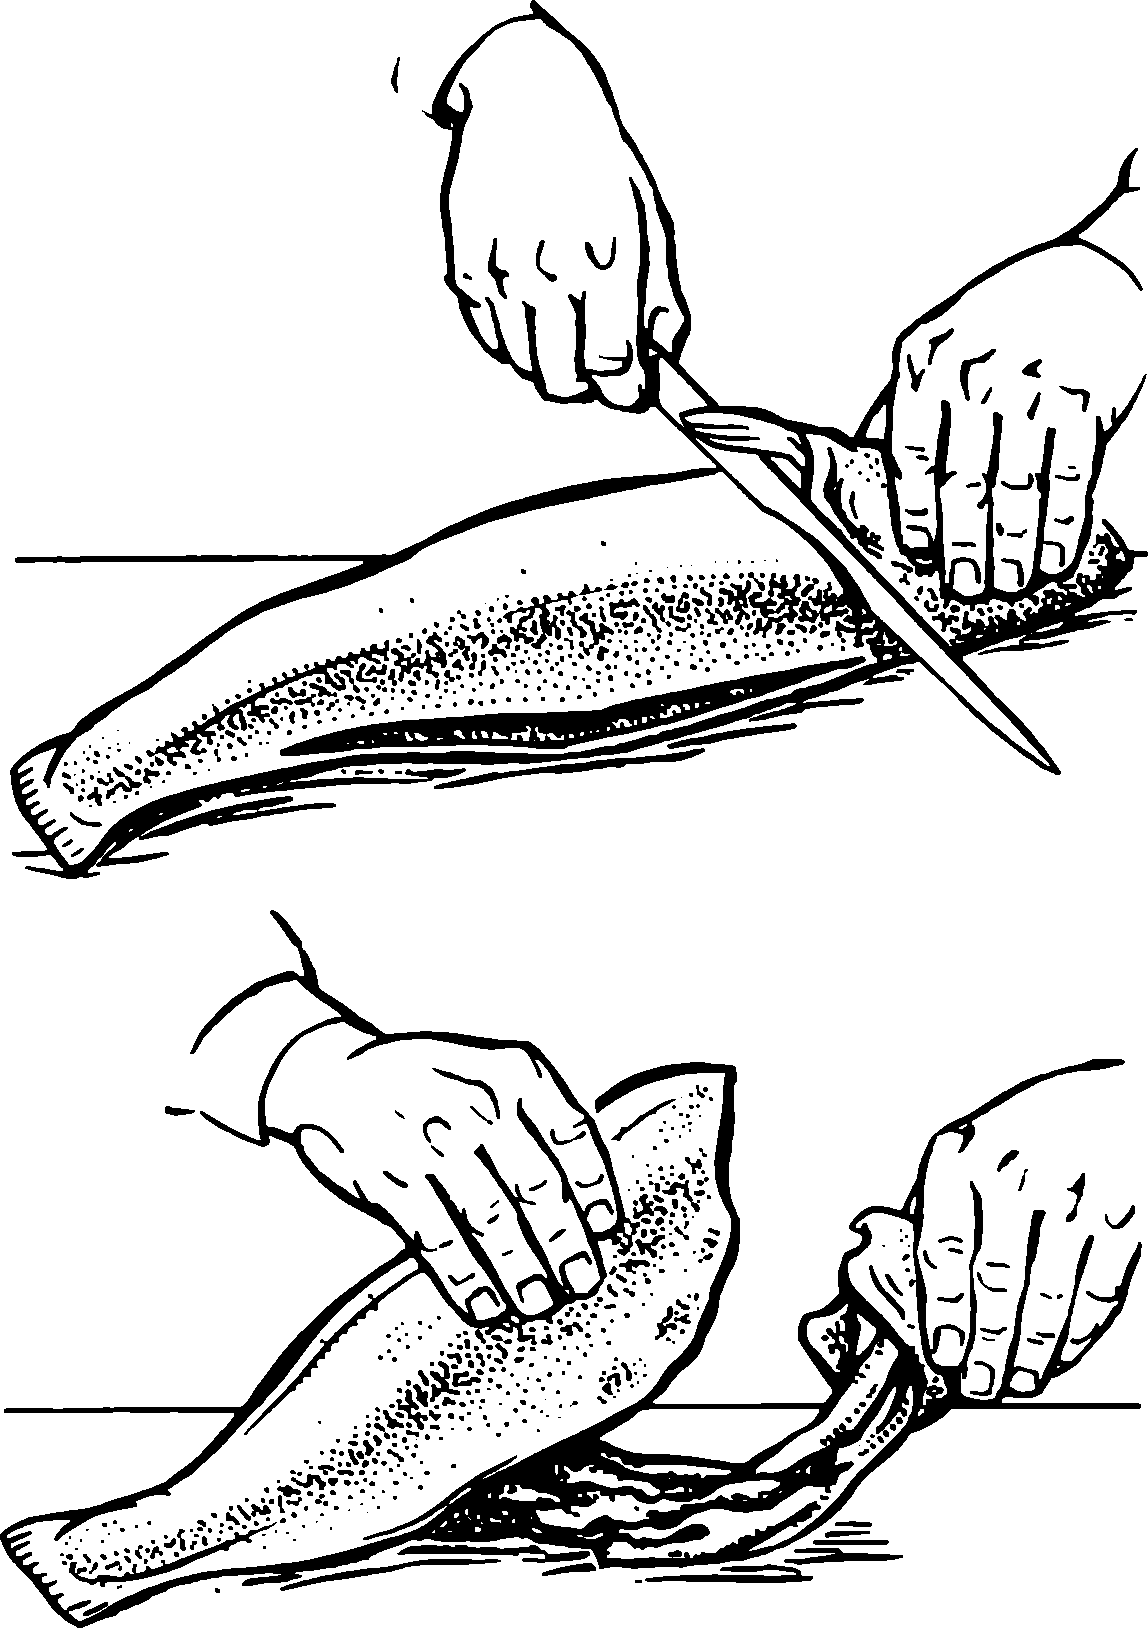 ✅ как очистить щуку от слизи. полезные свойства рыбы - sundaria.su